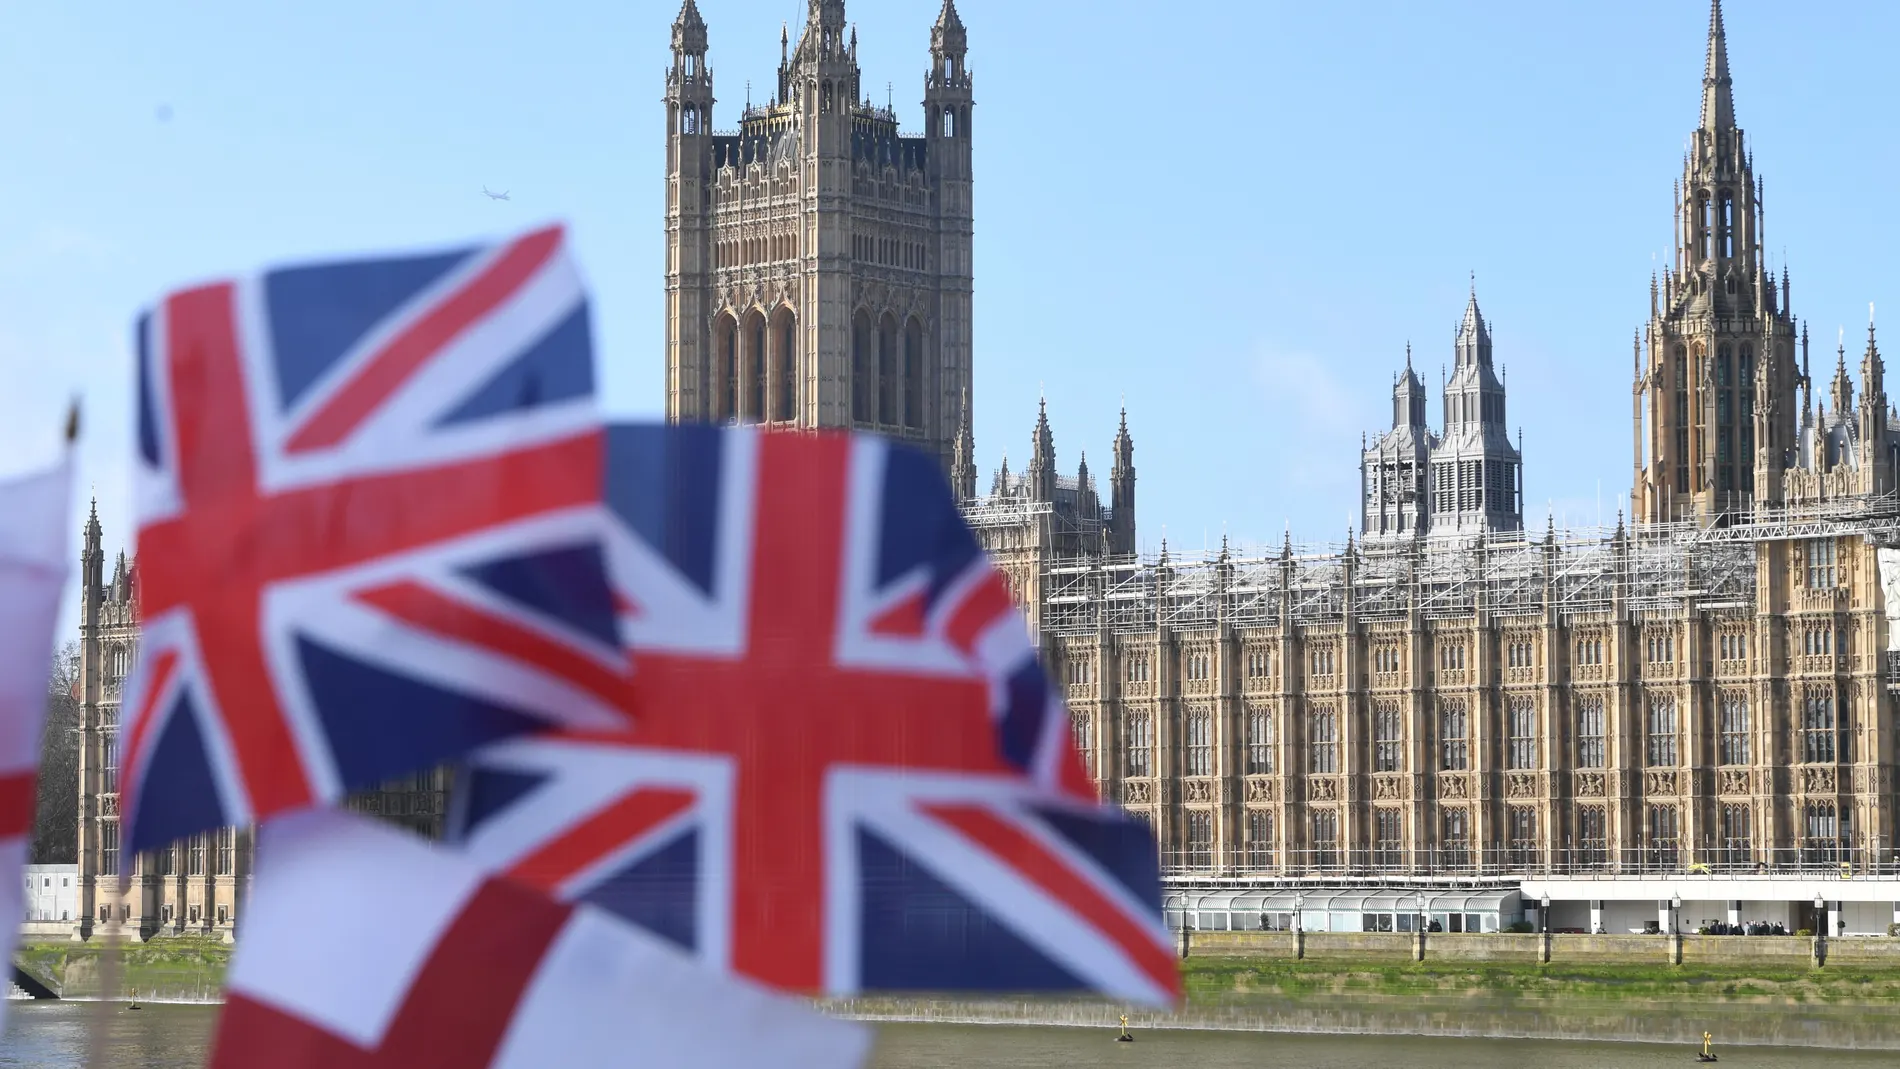 Banderas del Reino Unido frente al Parlamento británico